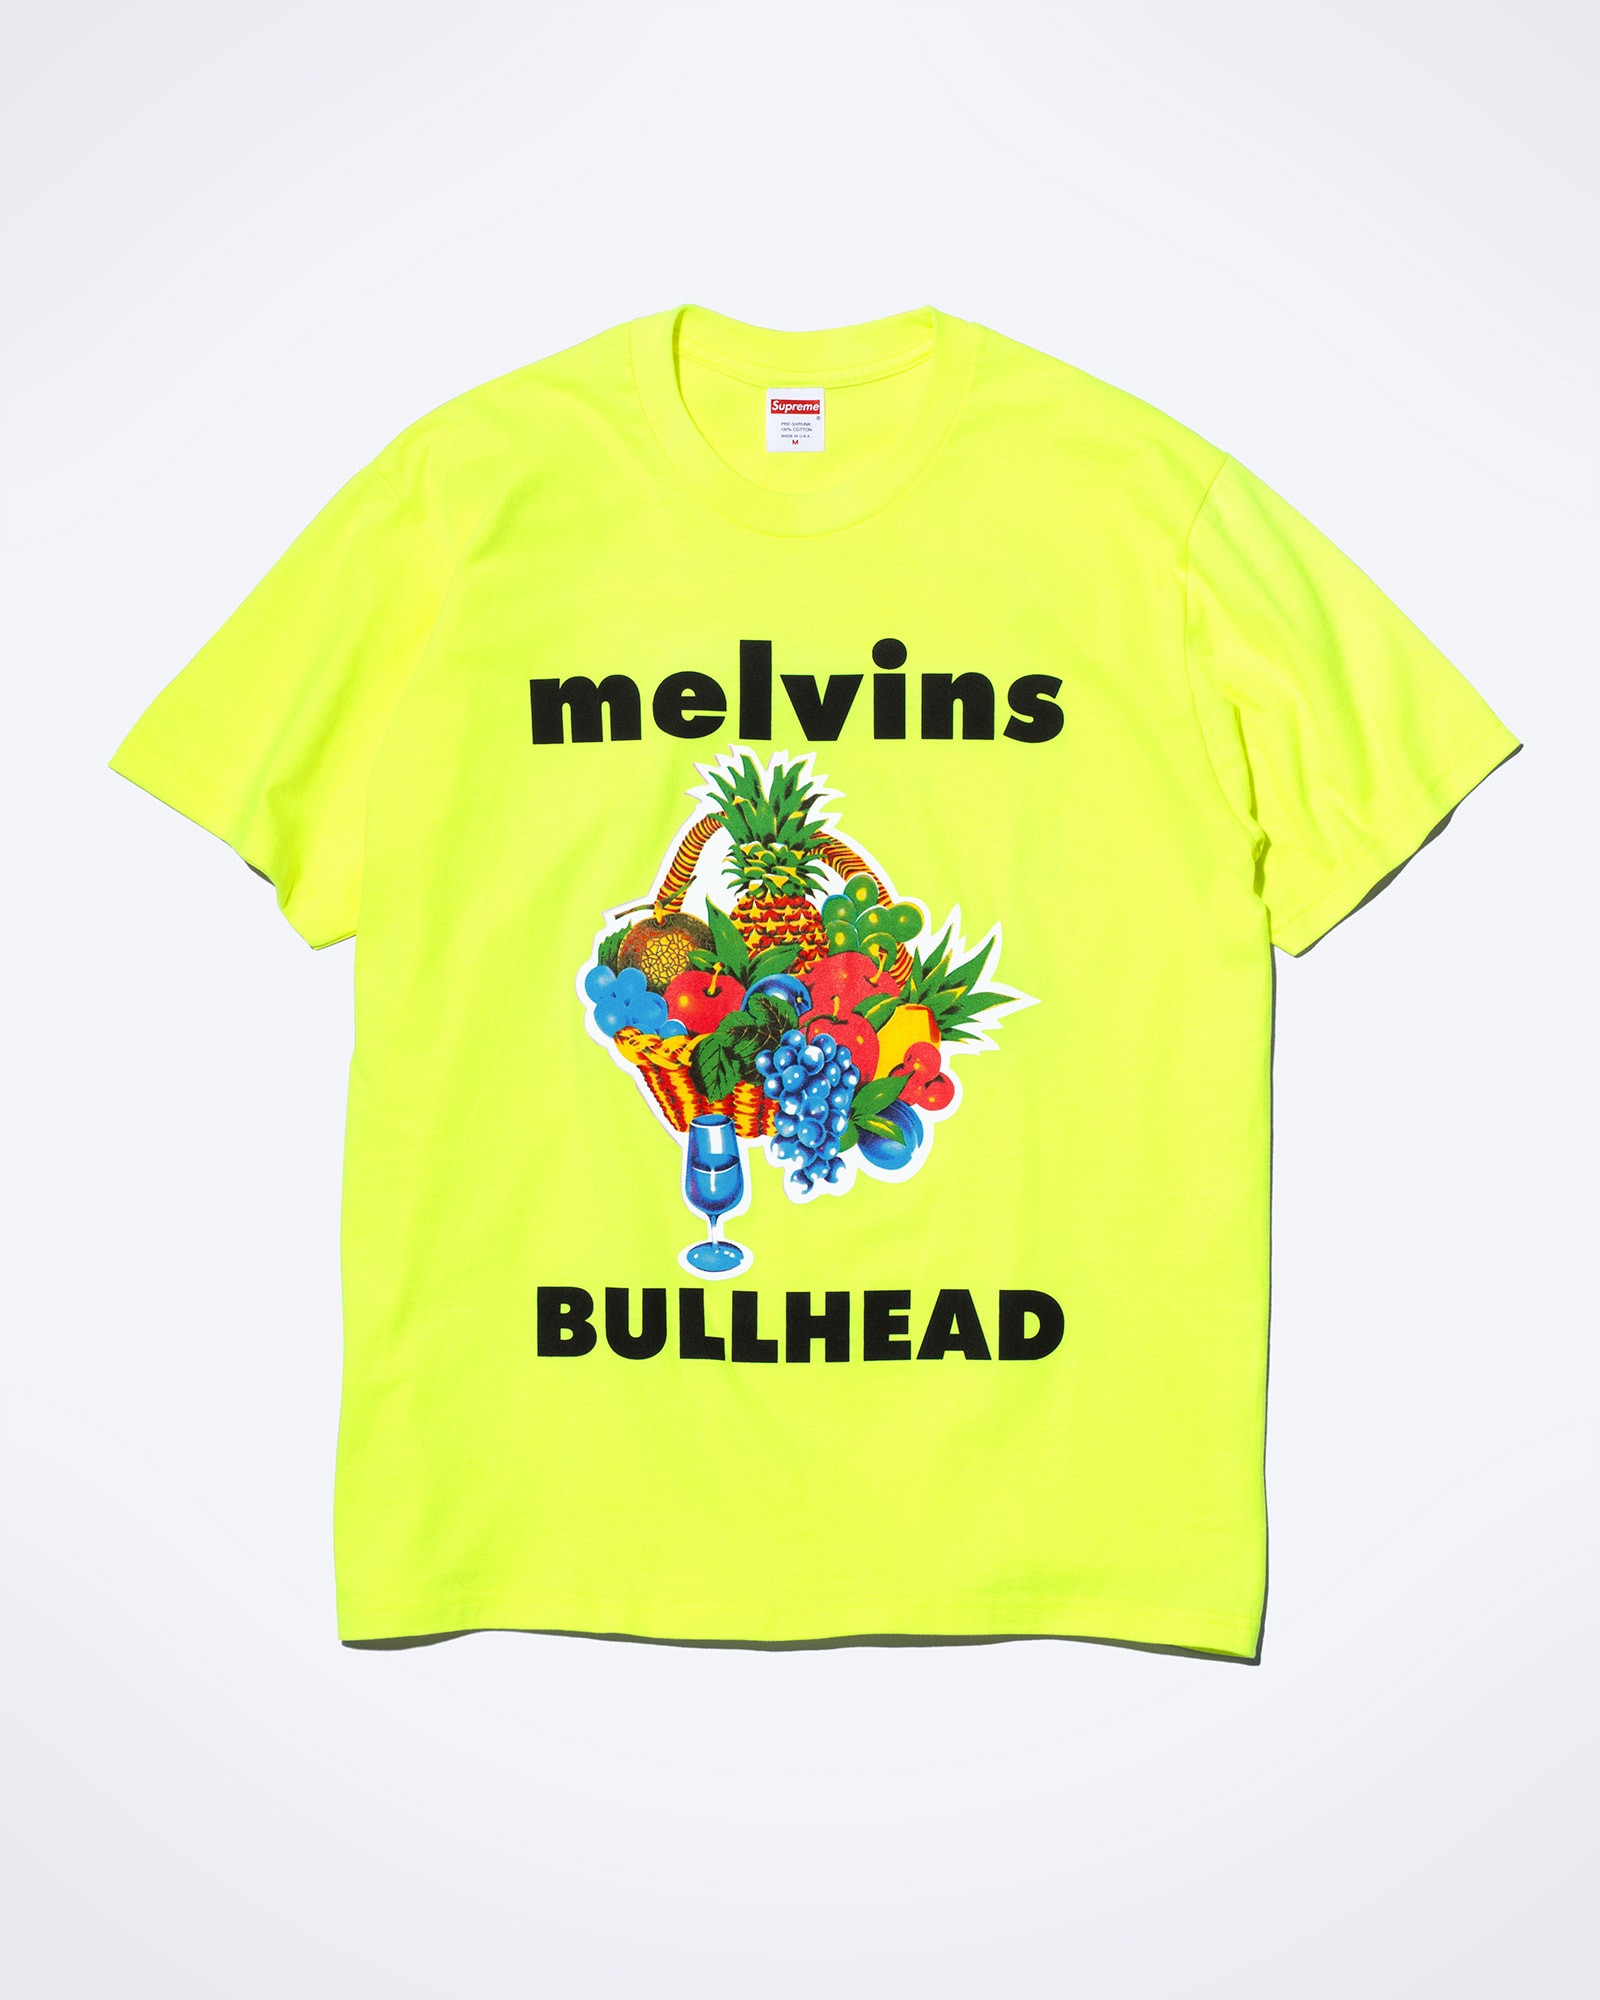 致敬摇滚传奇！Supreme x Melvins 全新联名系列完整揭晓